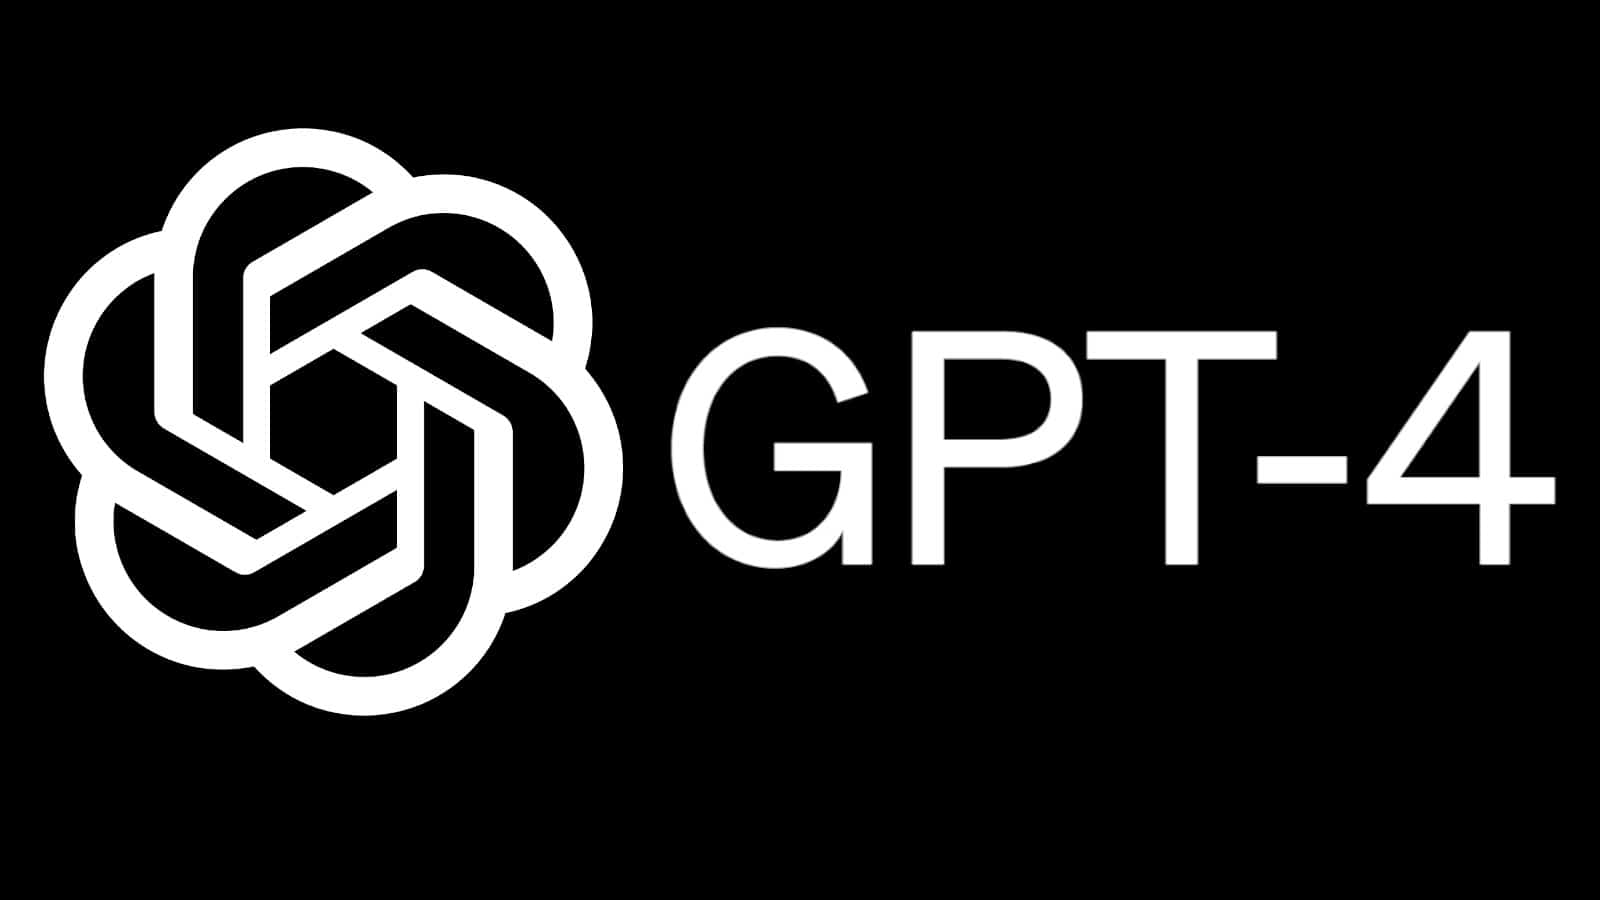 Si desea evitar la infracción de derechos de autor, es posible que desee evitar GPT-4